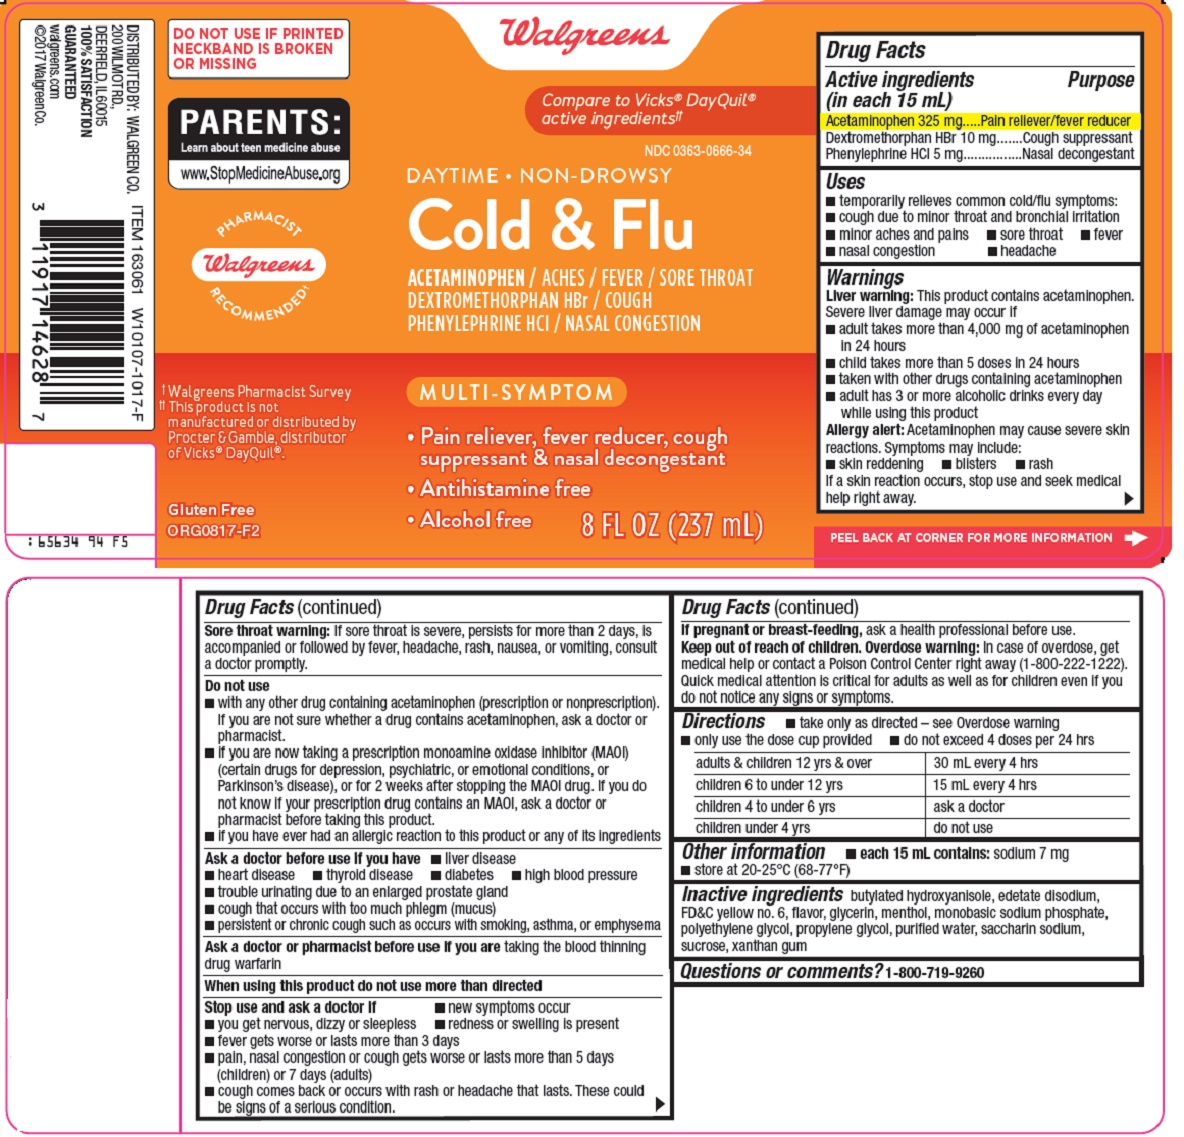 cold & flu image